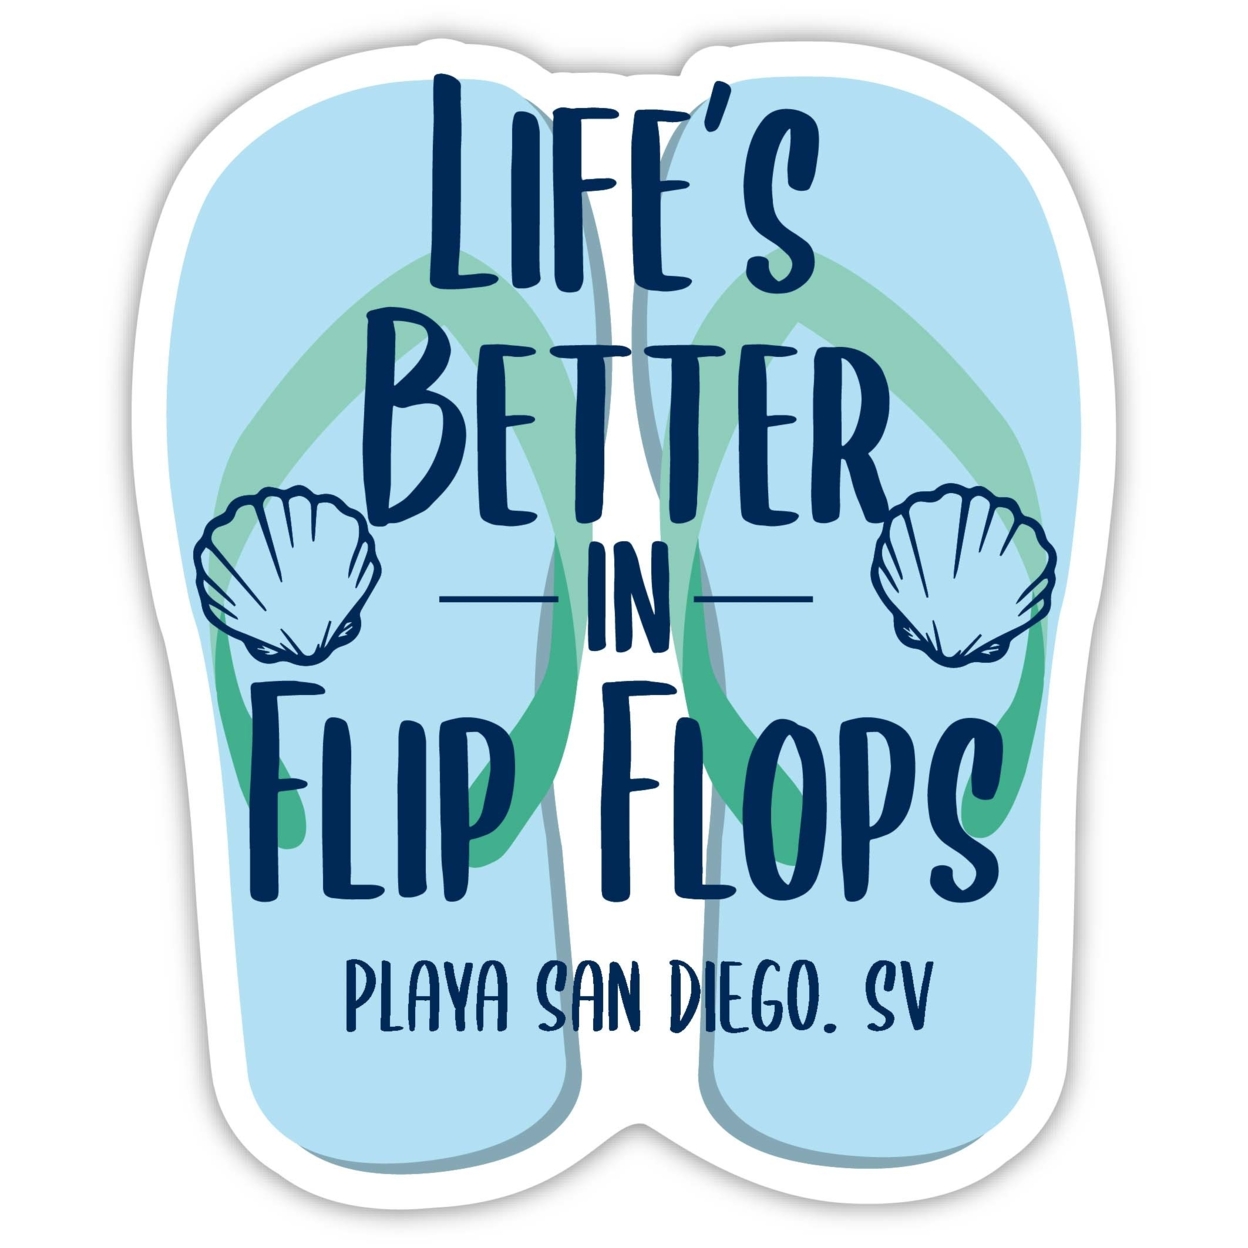 Playa San Diego El Salvador Souvenir 4 Inch Vinyl Decal Sticker Flip Flop Design